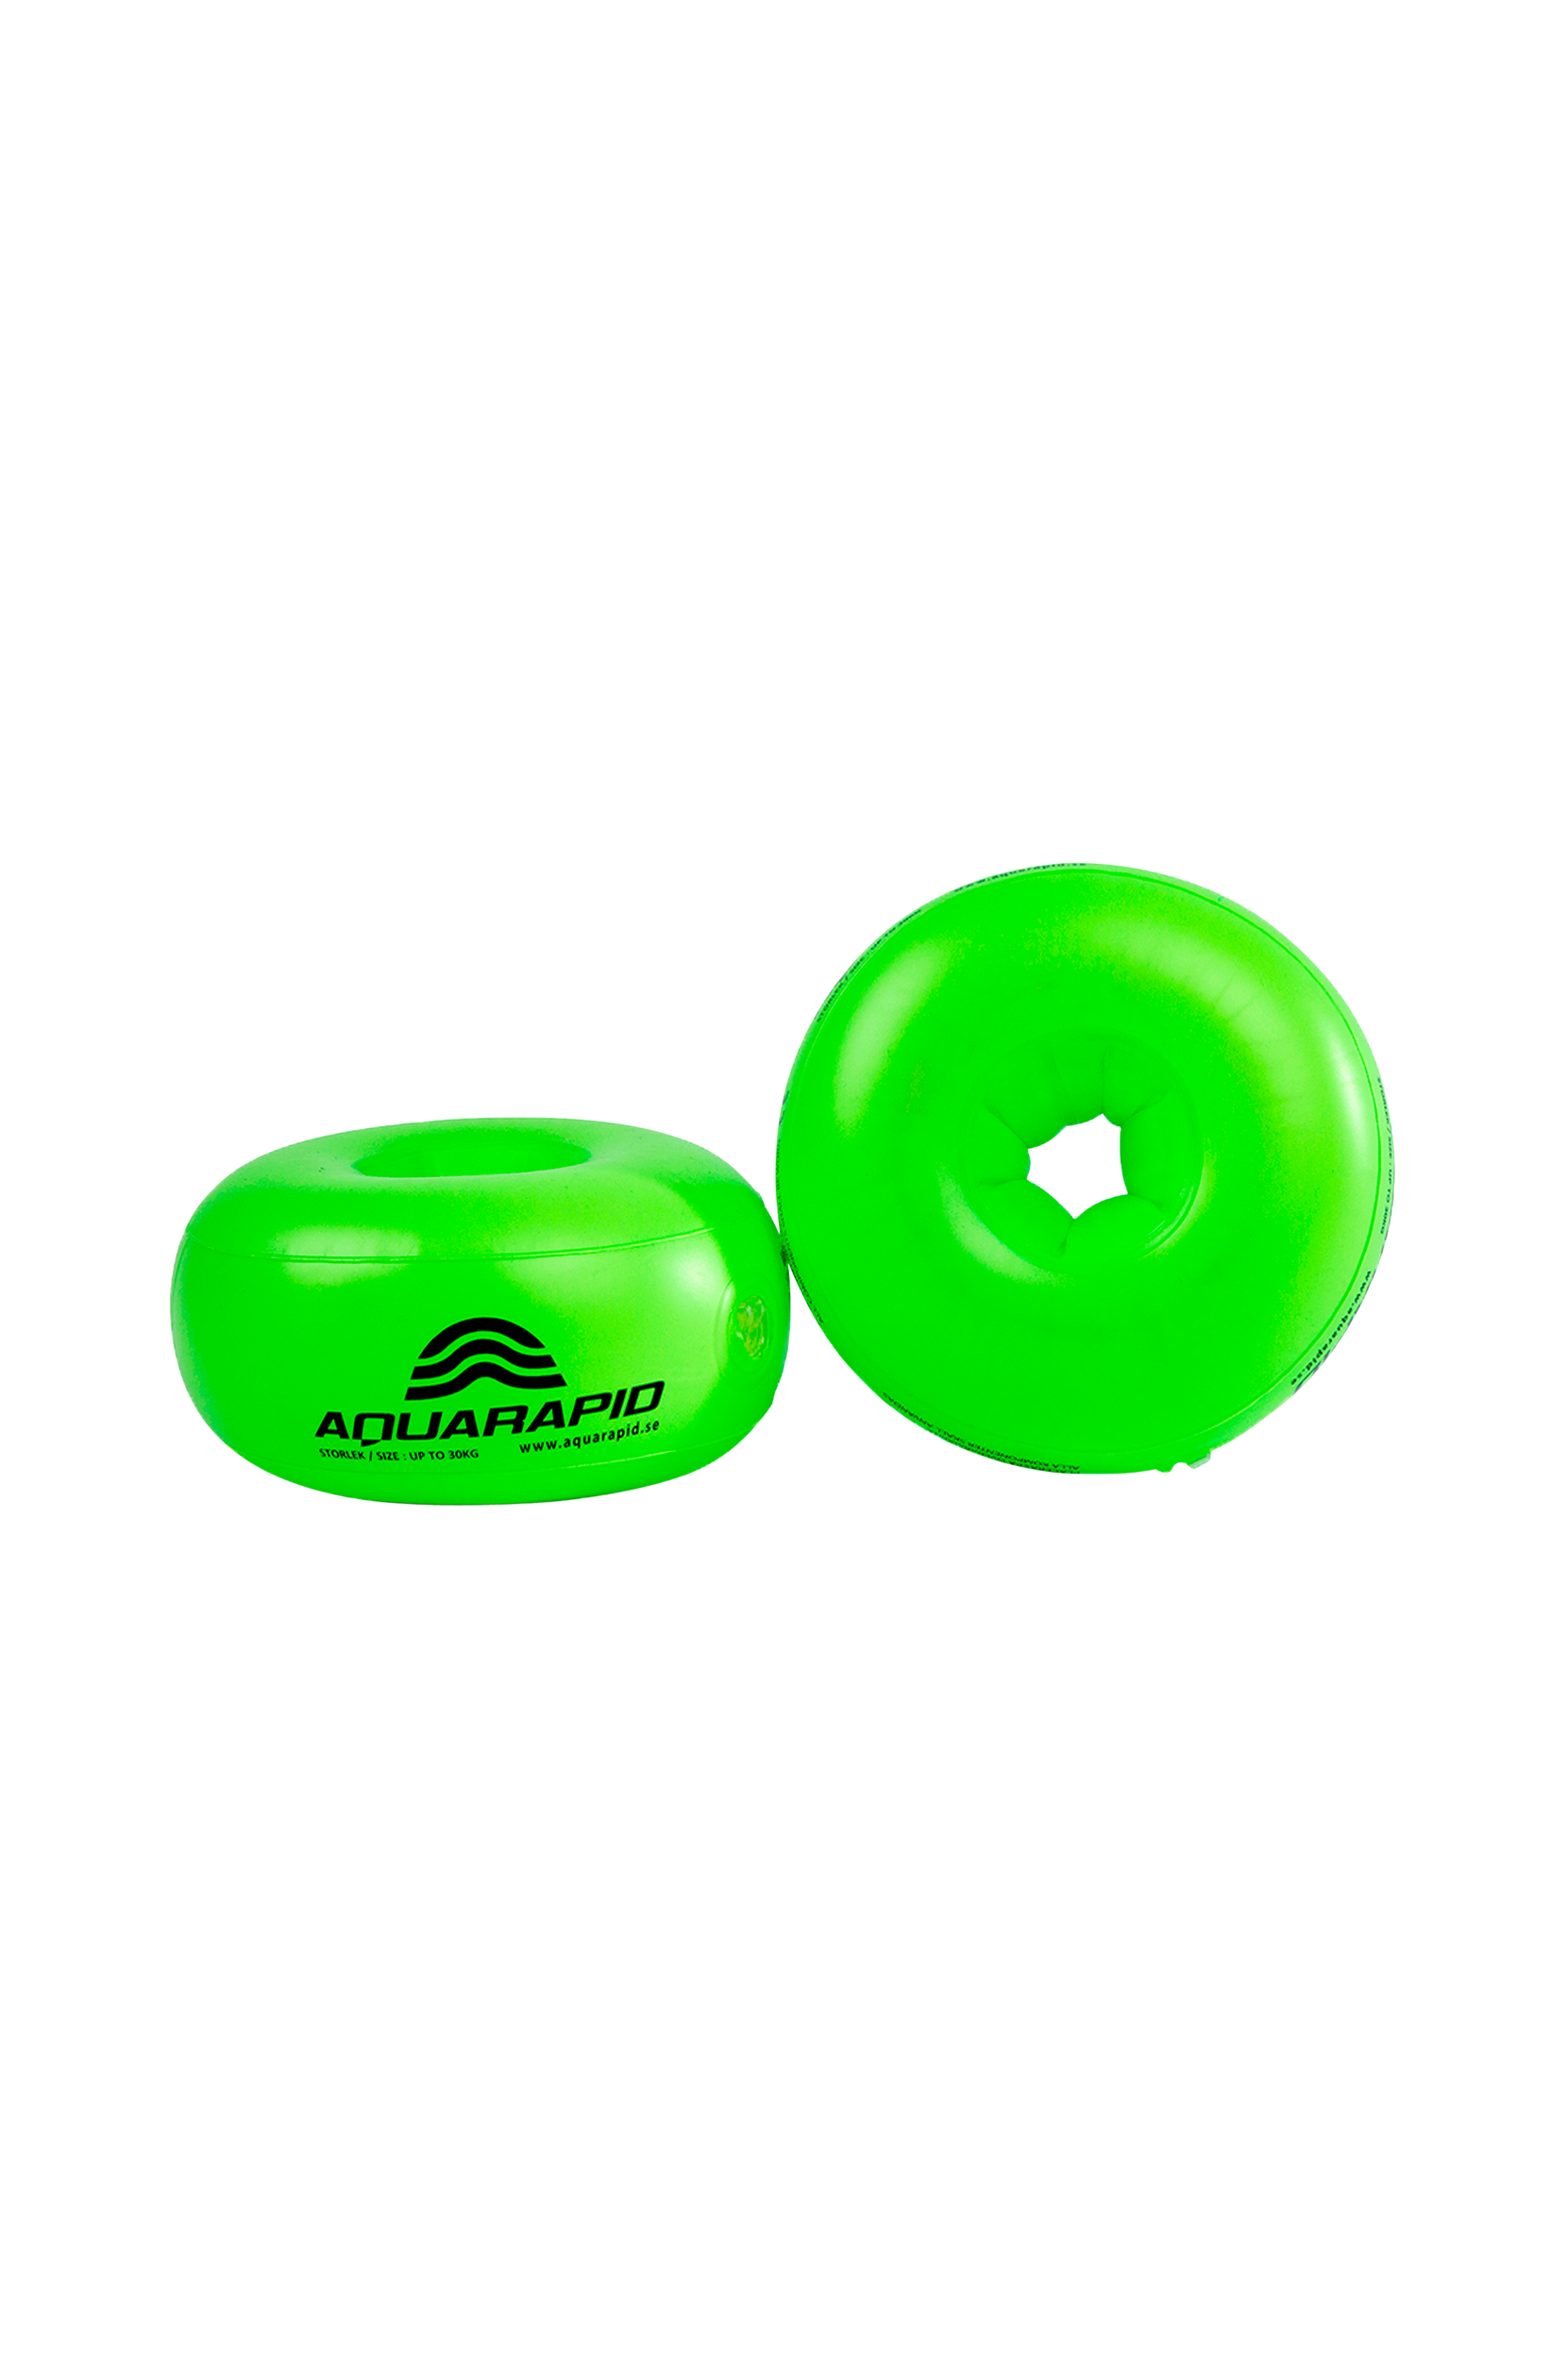 Aquarapid - Aquaring armband -30 kg Green